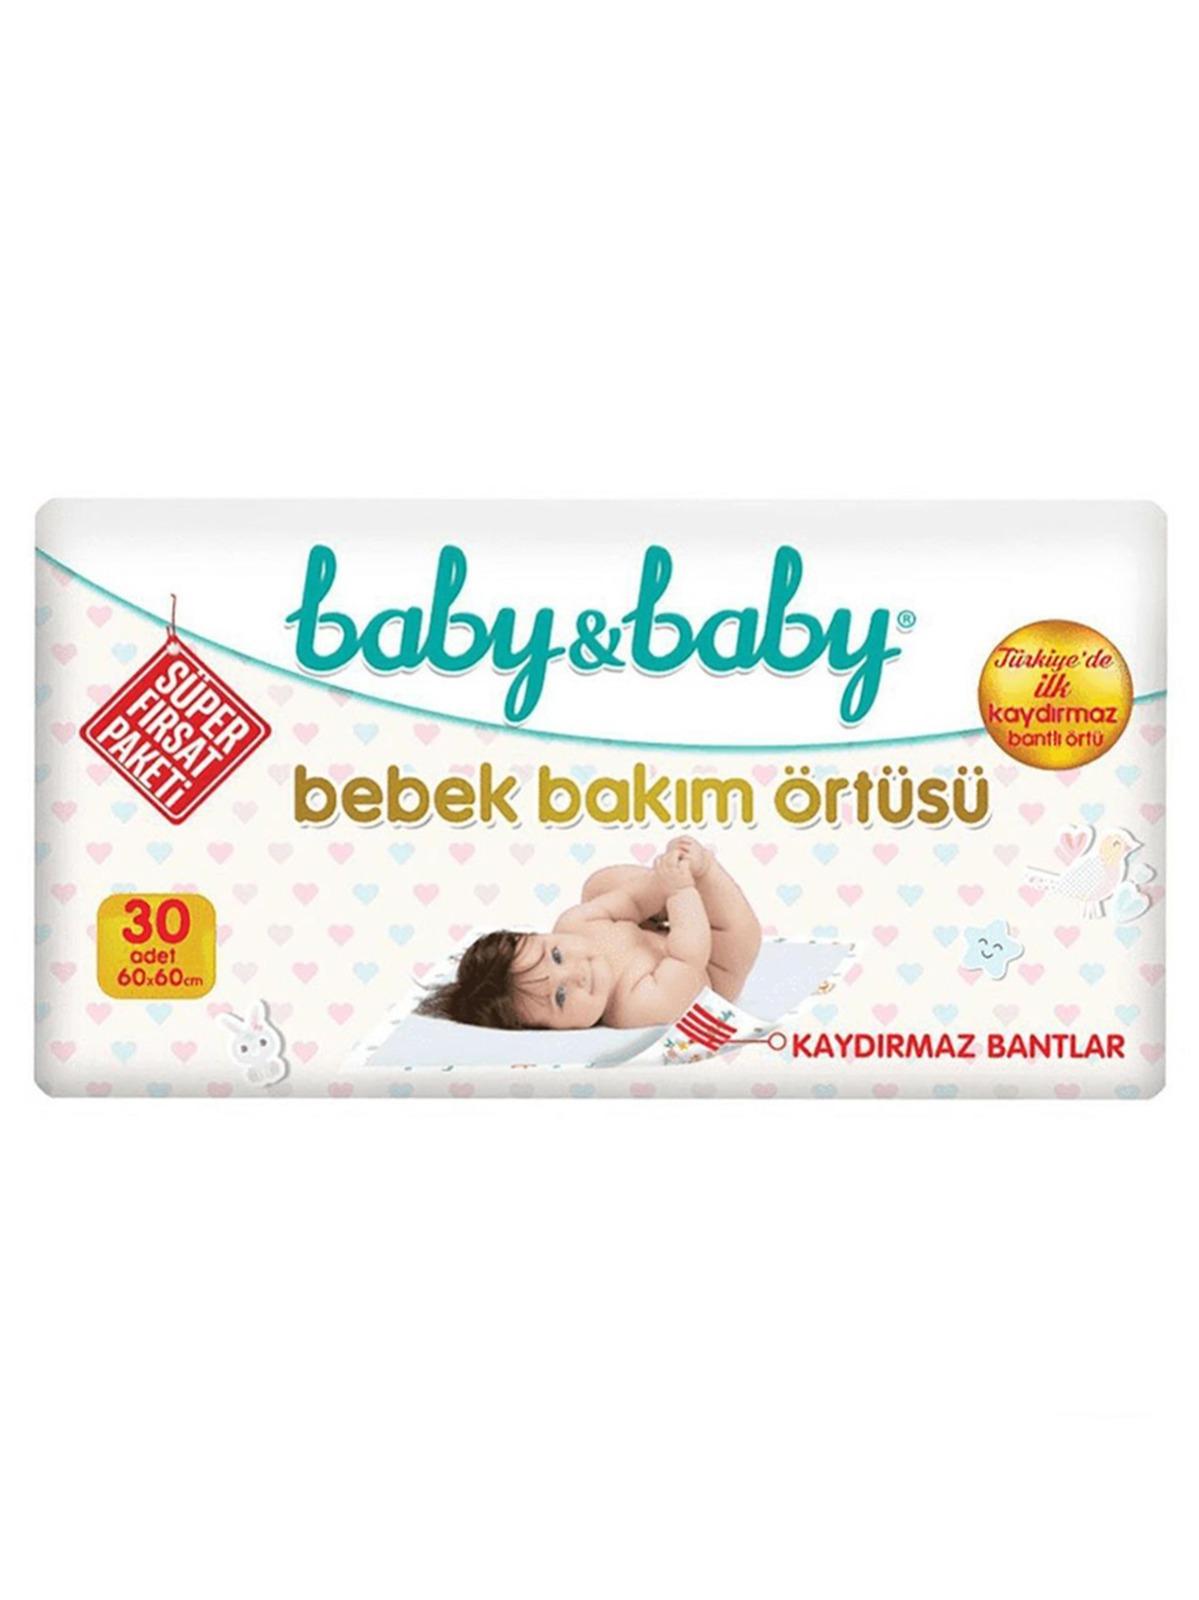 Baby&Baby Kaydırmaz Bantlı Bebek Bakım Örtüsü 30x4 120 Adet